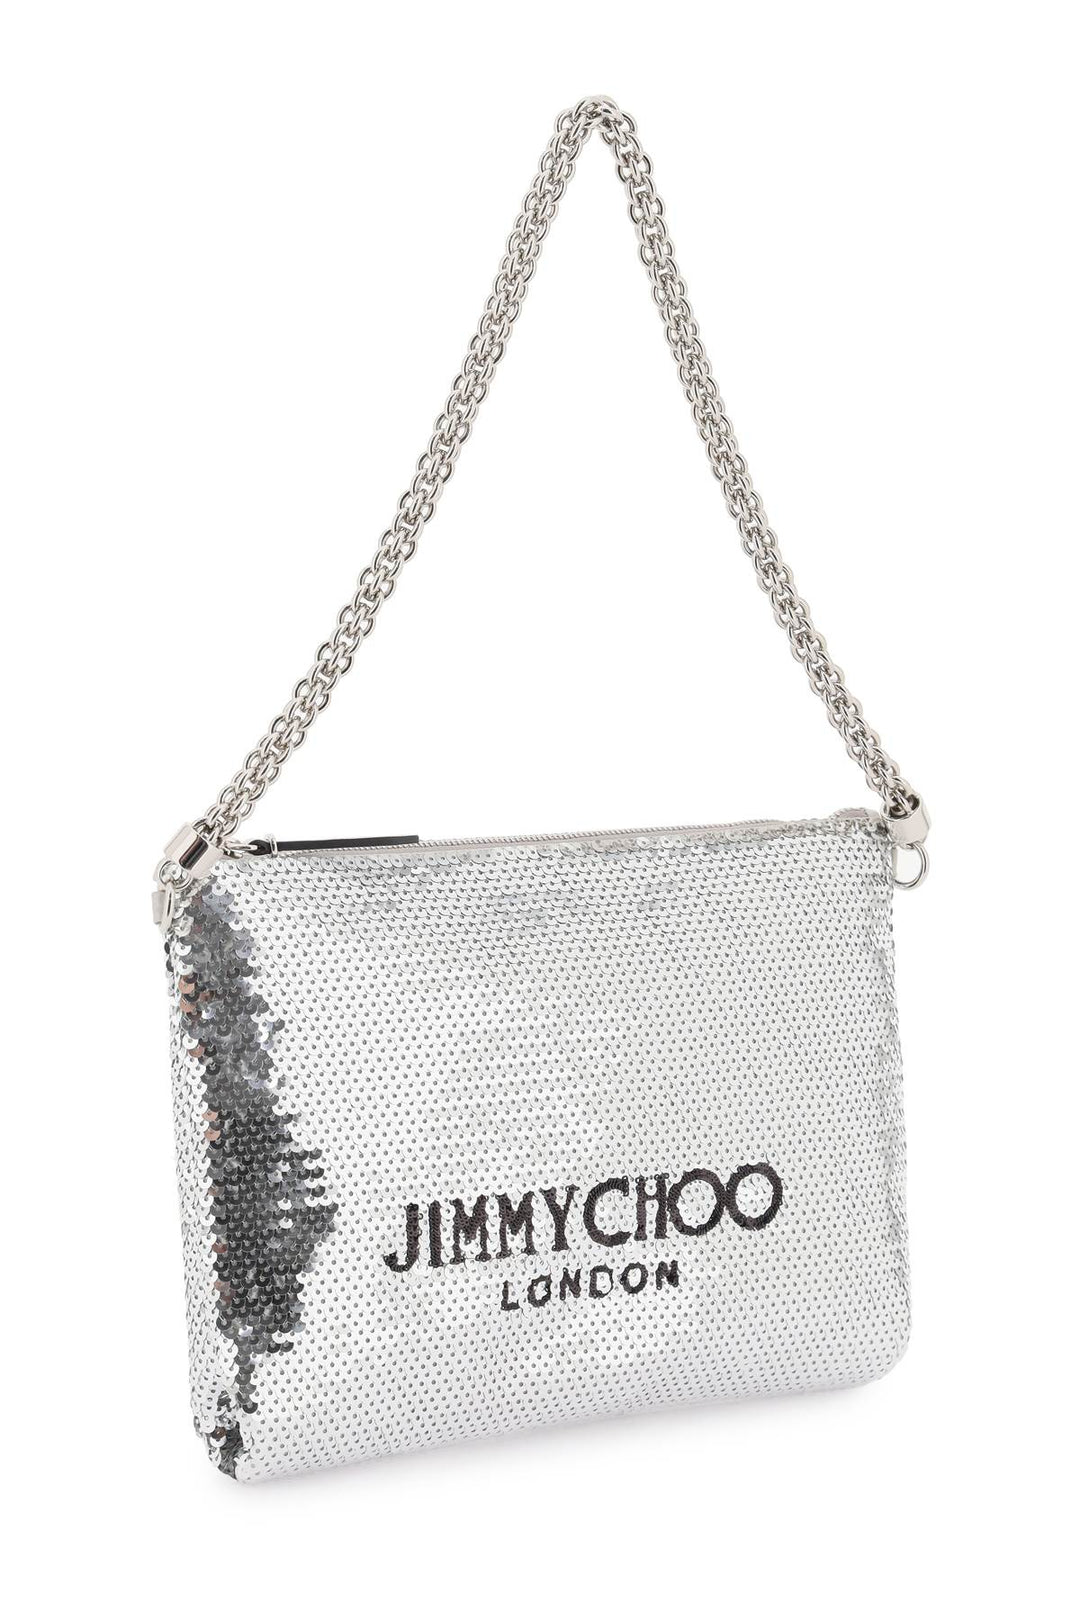 Jimmy Choo Callie Shoulder Bag   Argento